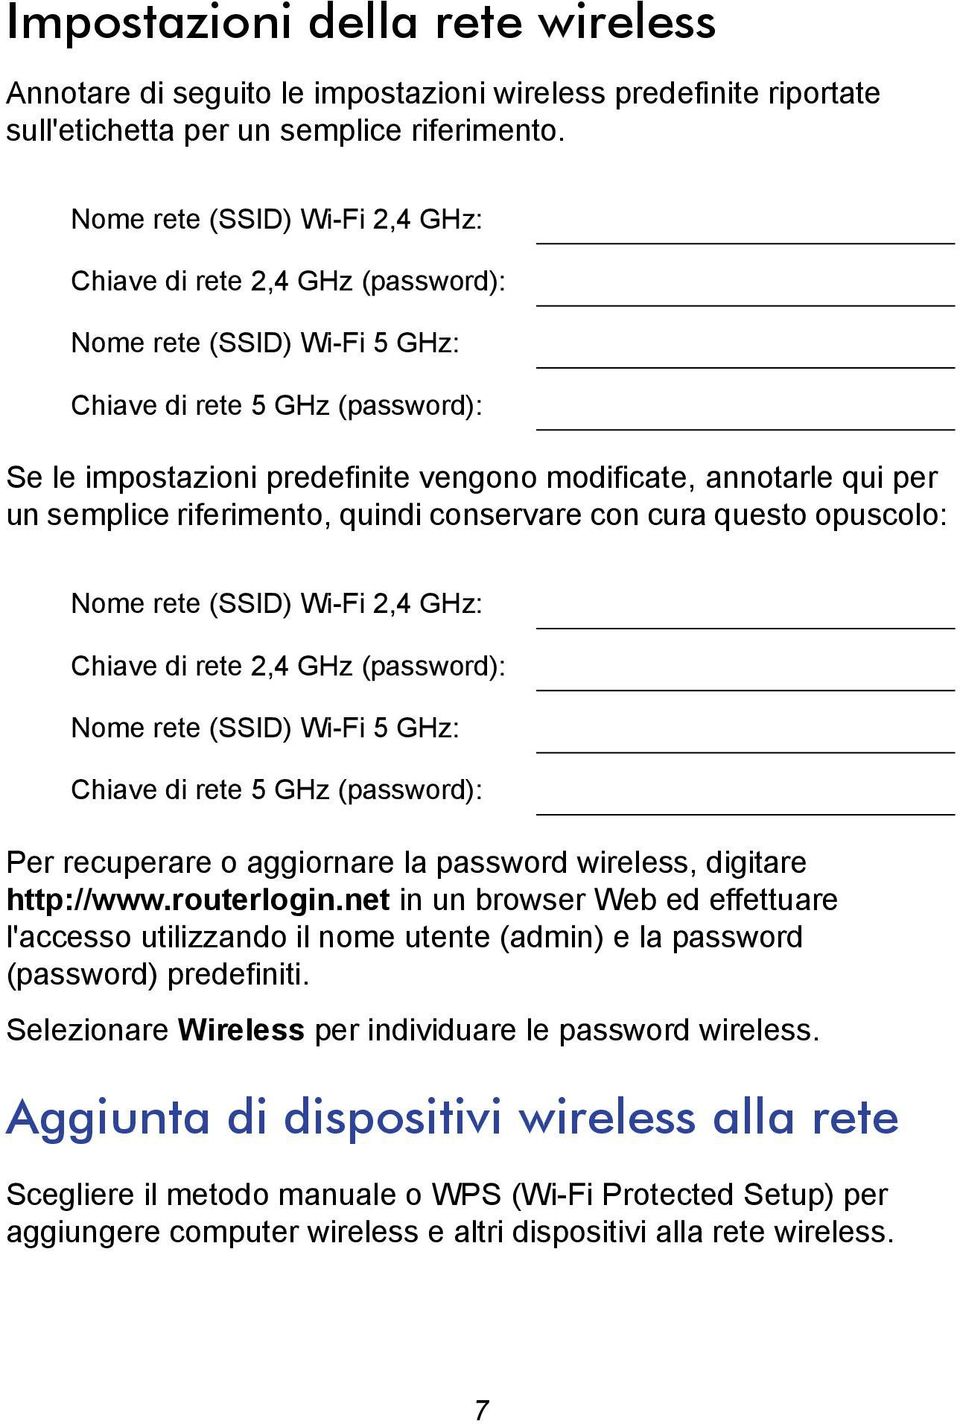 un semplice riferimento, quindi conservare con cura questo opuscolo: Nome rete (SSID) Wi-Fi 2,4 GHz: Chiave di rete 2,4 GHz (password): Nome rete (SSID) Wi-Fi 5 GHz: Chiave di rete 5 GHz (password):